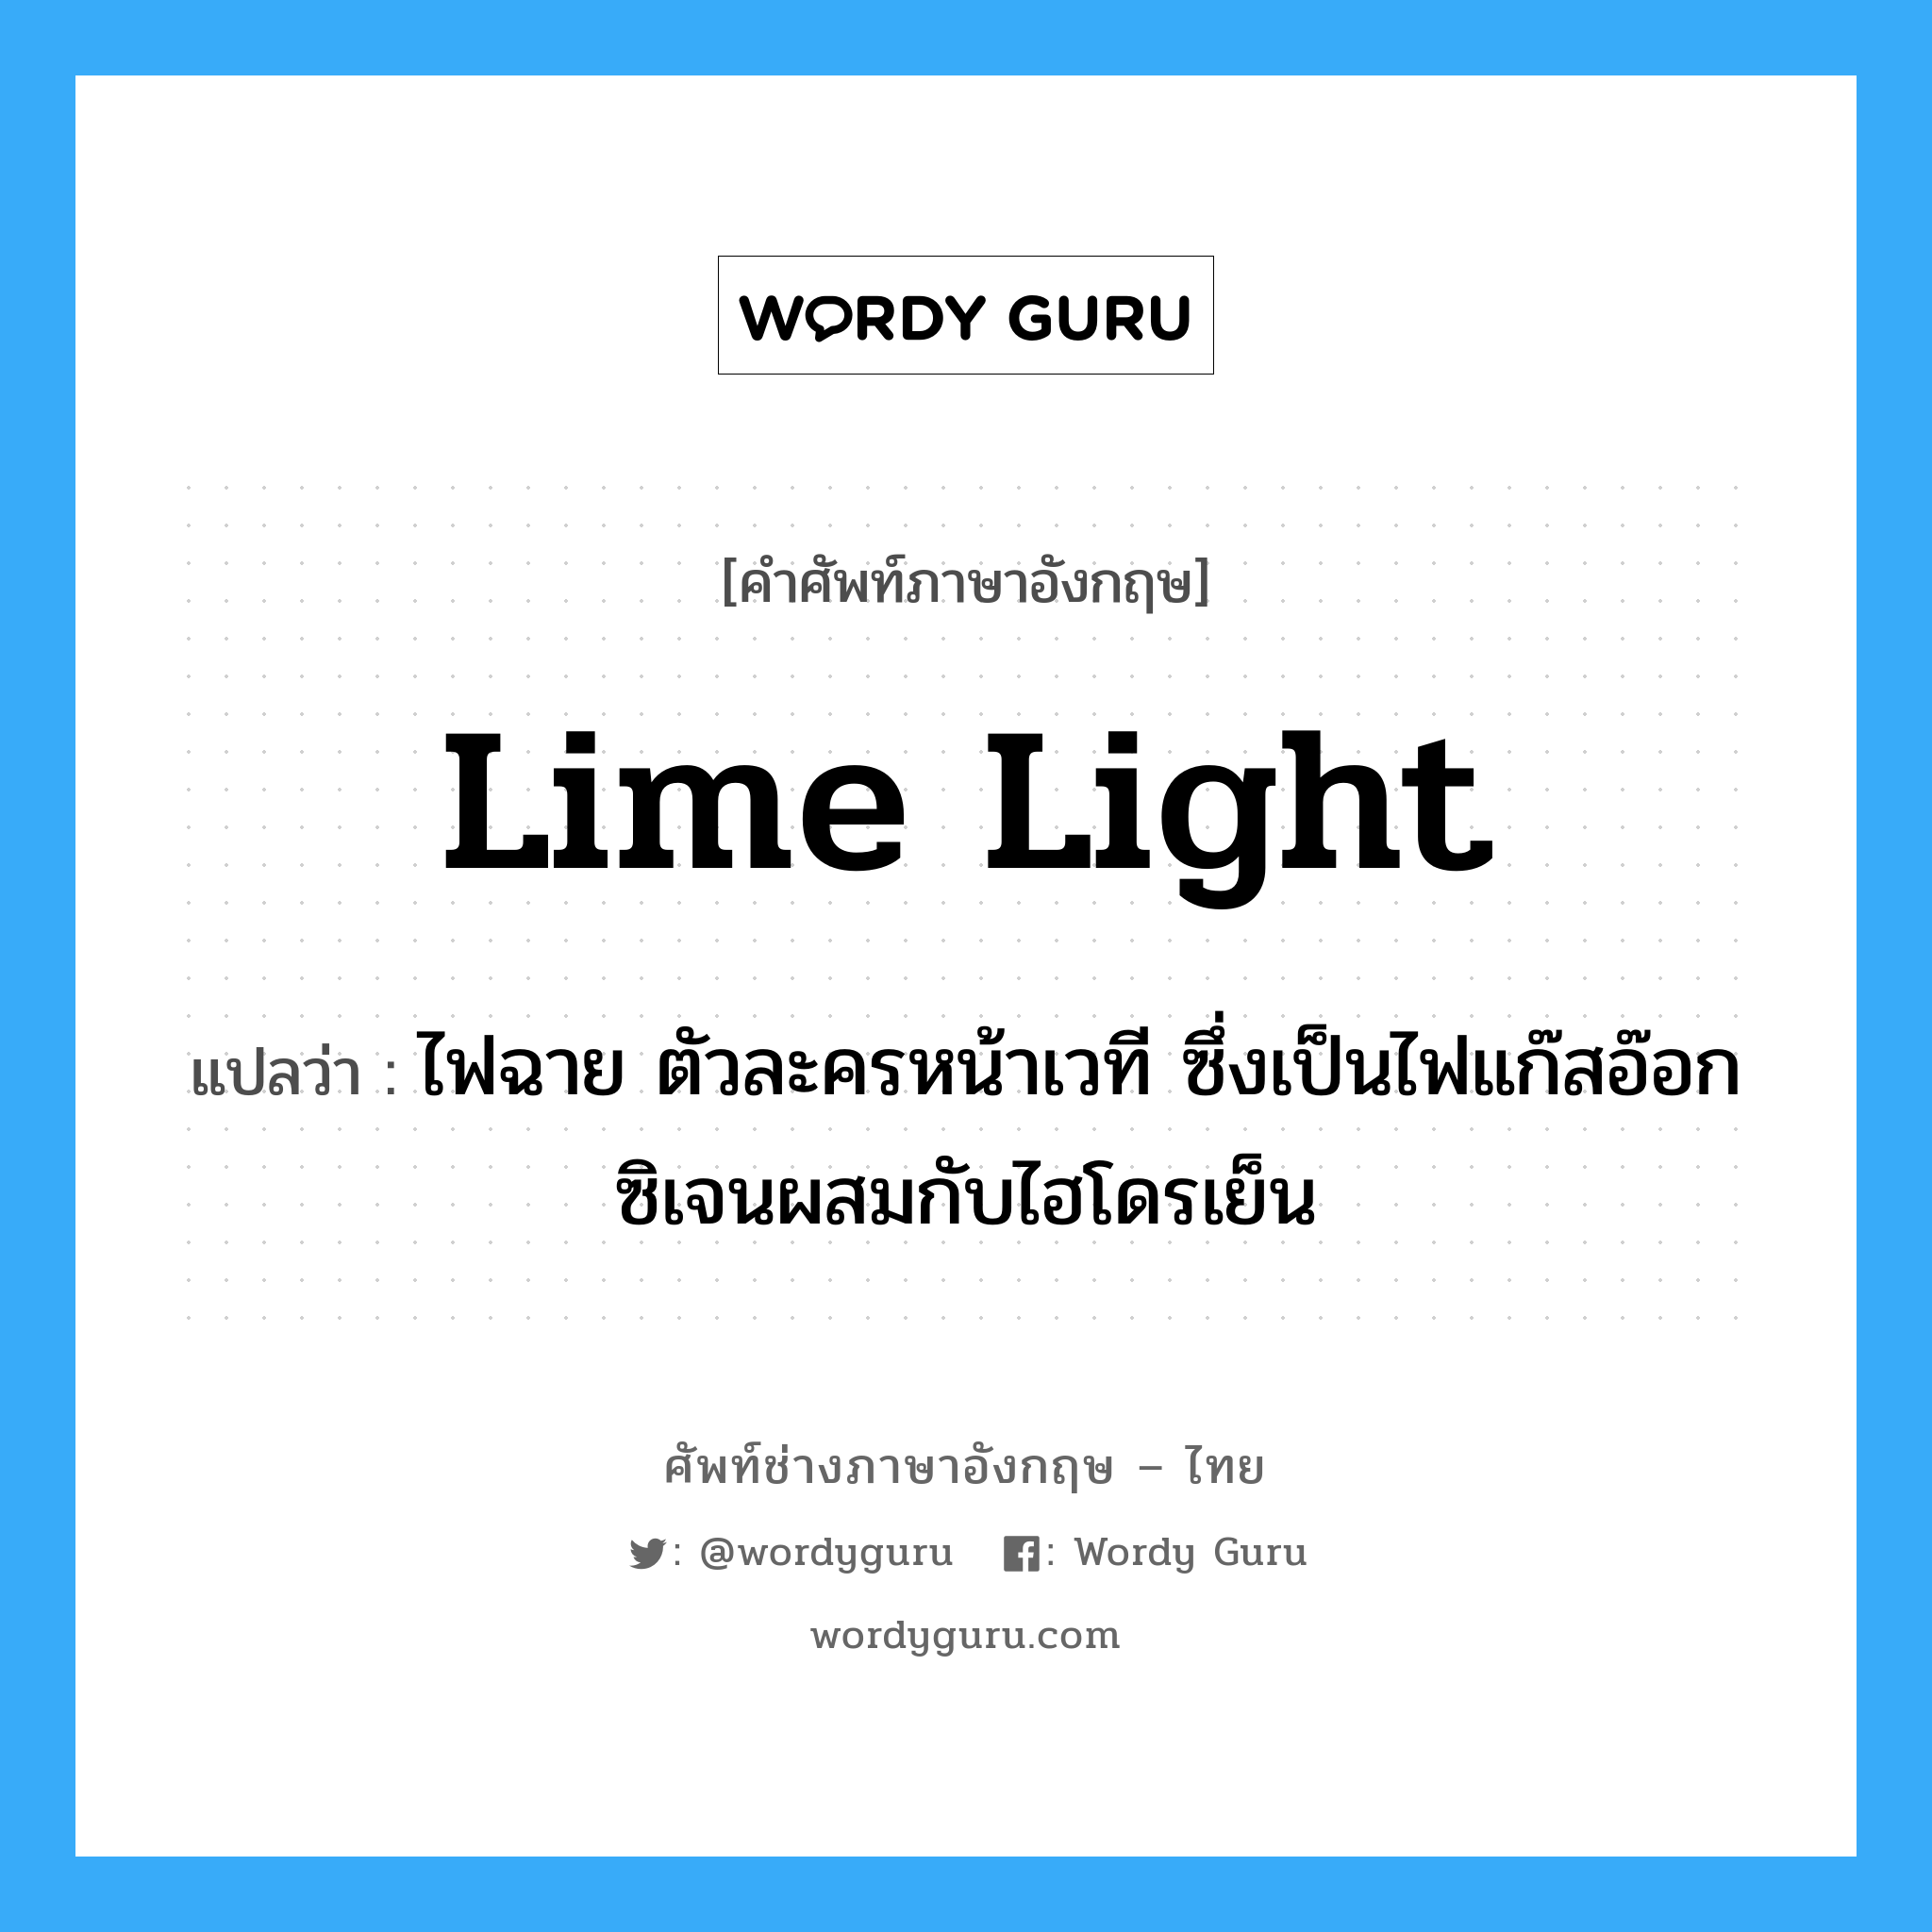 lime light แปลว่า?, คำศัพท์ช่างภาษาอังกฤษ - ไทย lime light คำศัพท์ภาษาอังกฤษ lime light แปลว่า ไฟฉาย ตัวละครหน้าเวที ซึ่งเป็นไฟแก๊สอ๊อกซิเจนผสมกับไฮโดรเย็น